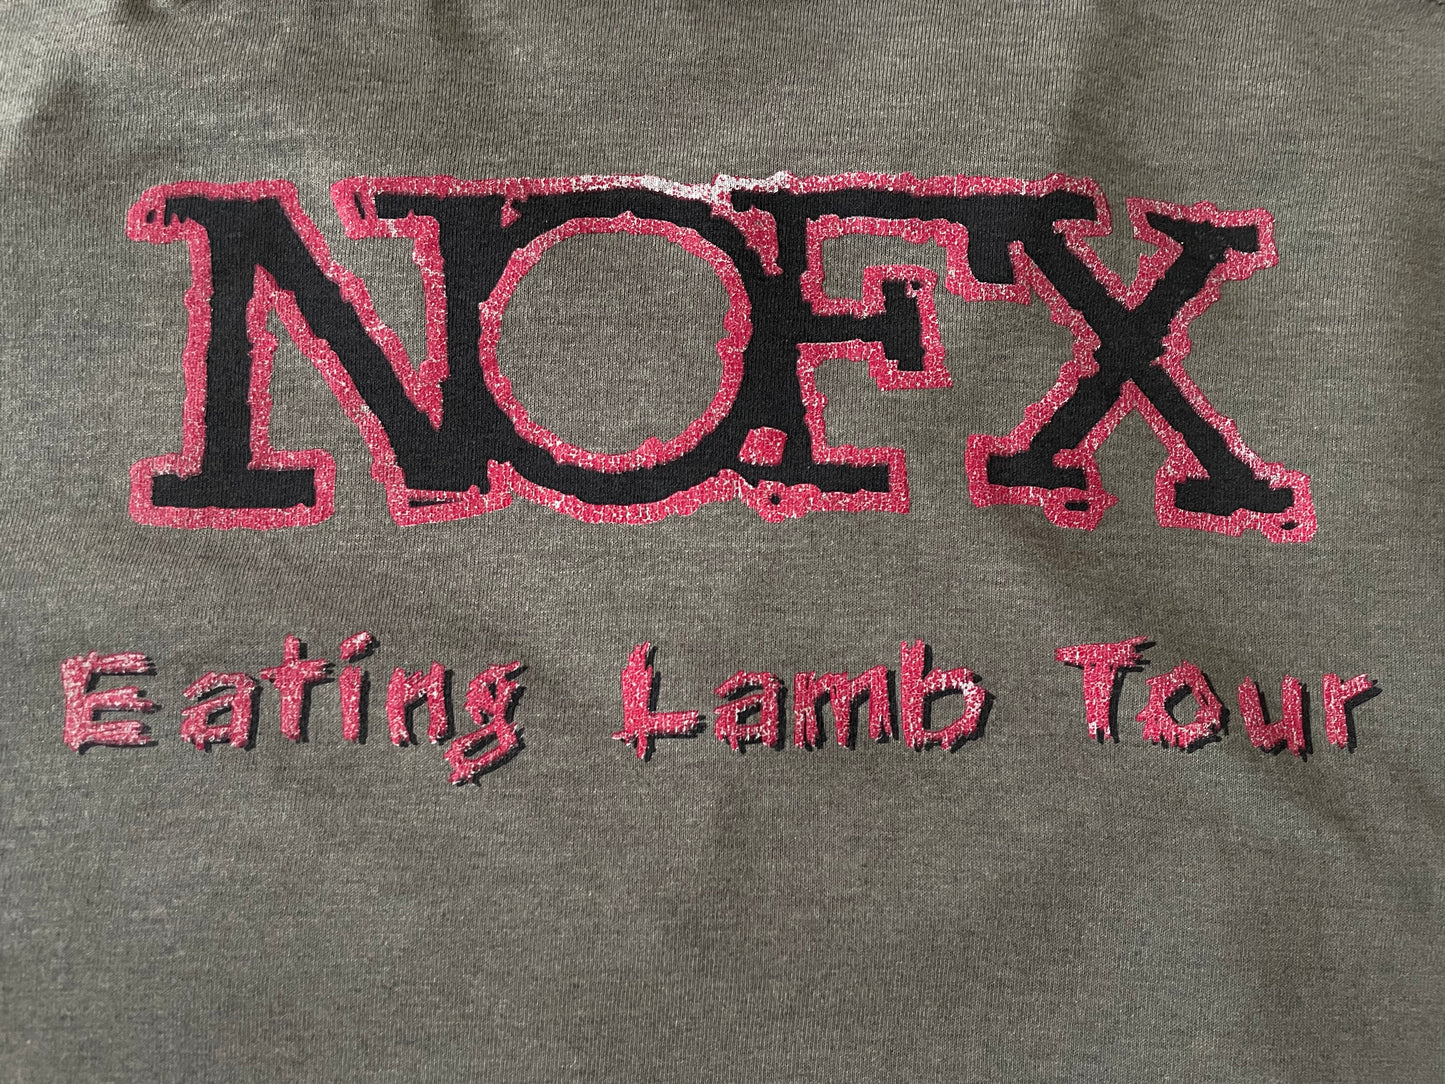 NOFX - Eating Lamb Tour 1996 - Original Vintage t-shirt